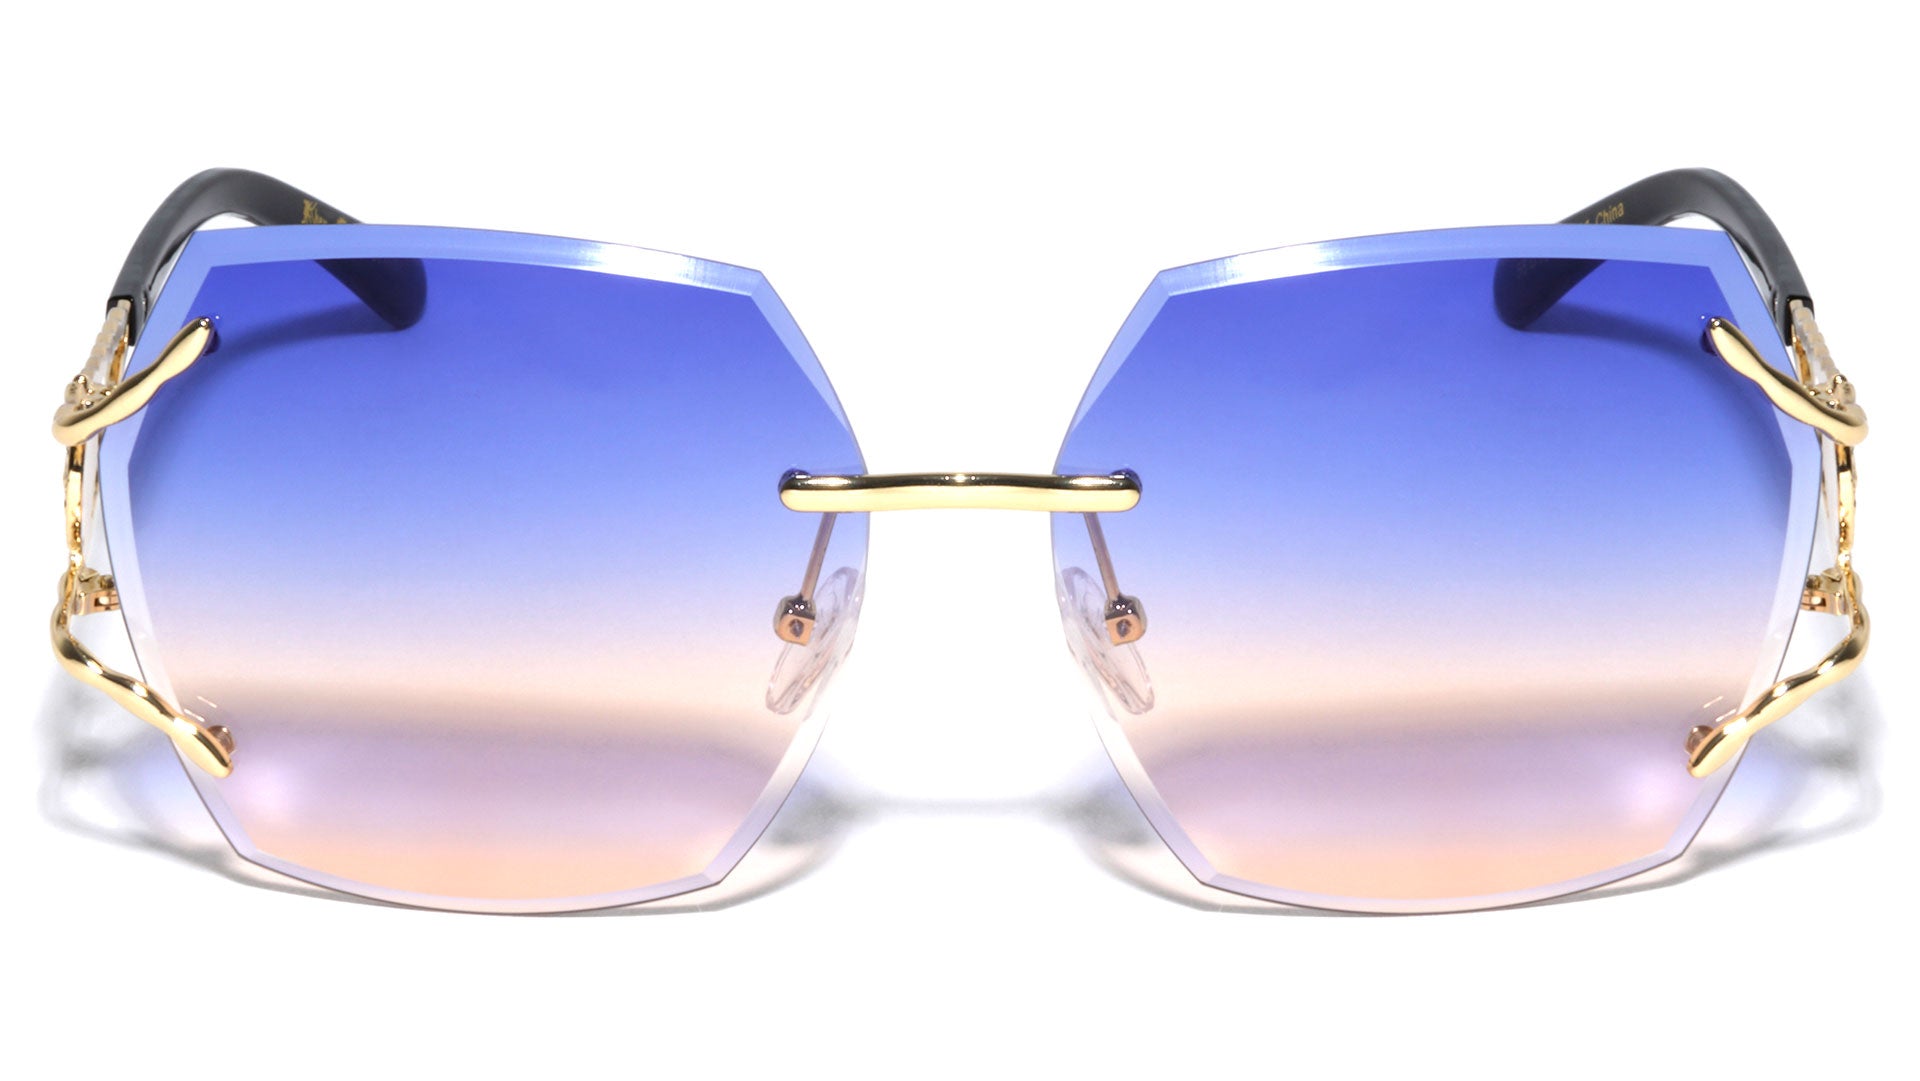 LH-M7828 KLEO Rectangle Wholesale Fashion Sunglasses - Frontier